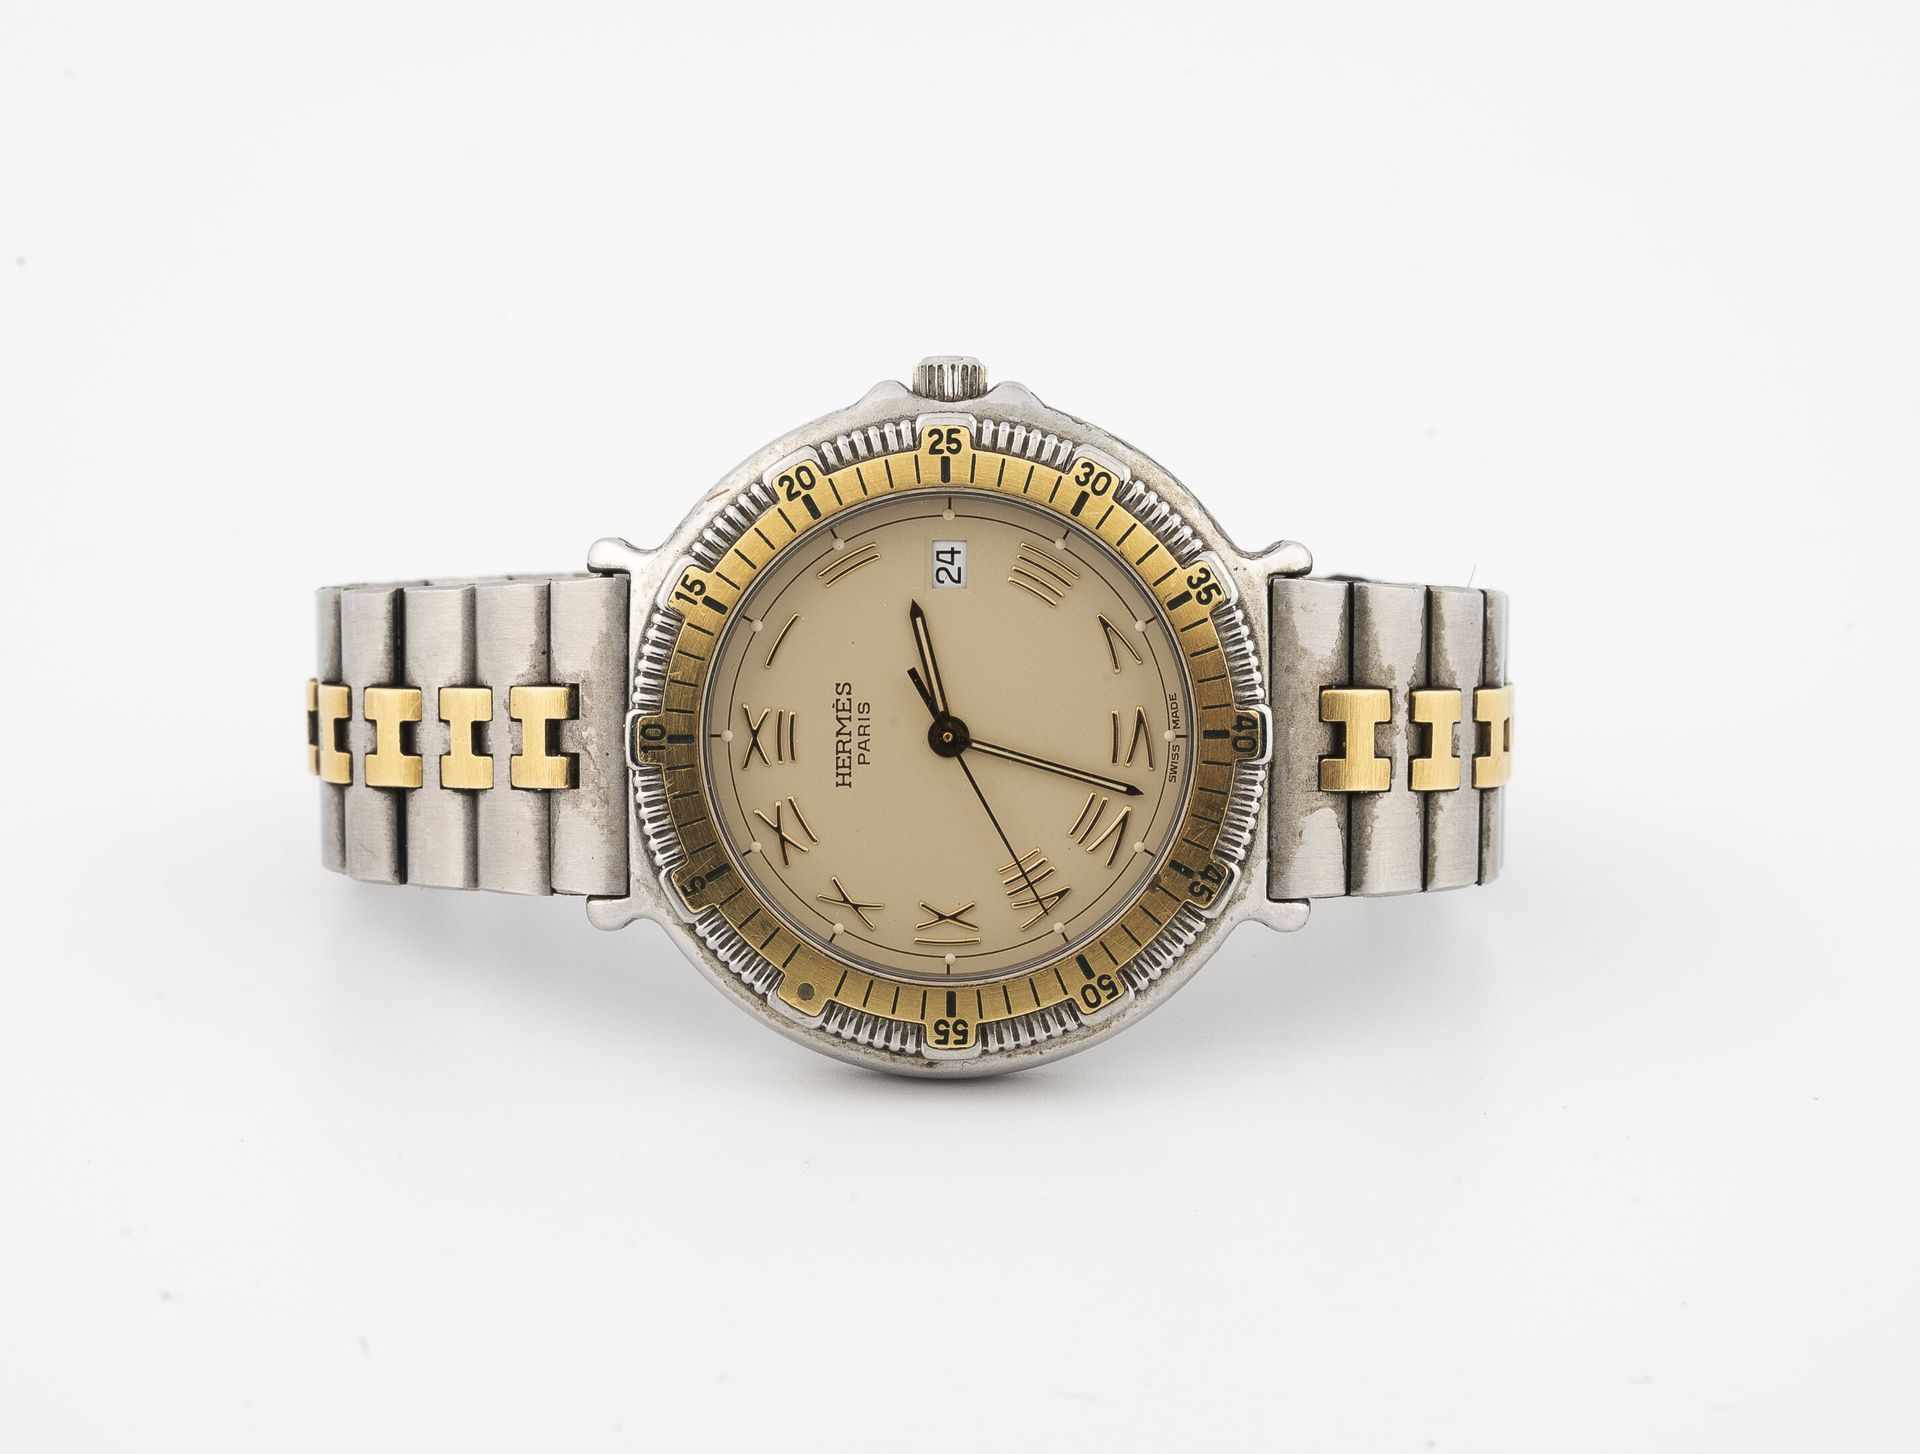 HERMES Paris Reloj de pulsera para hombre en acero y metal dorado.

Caja redonda&hellip;